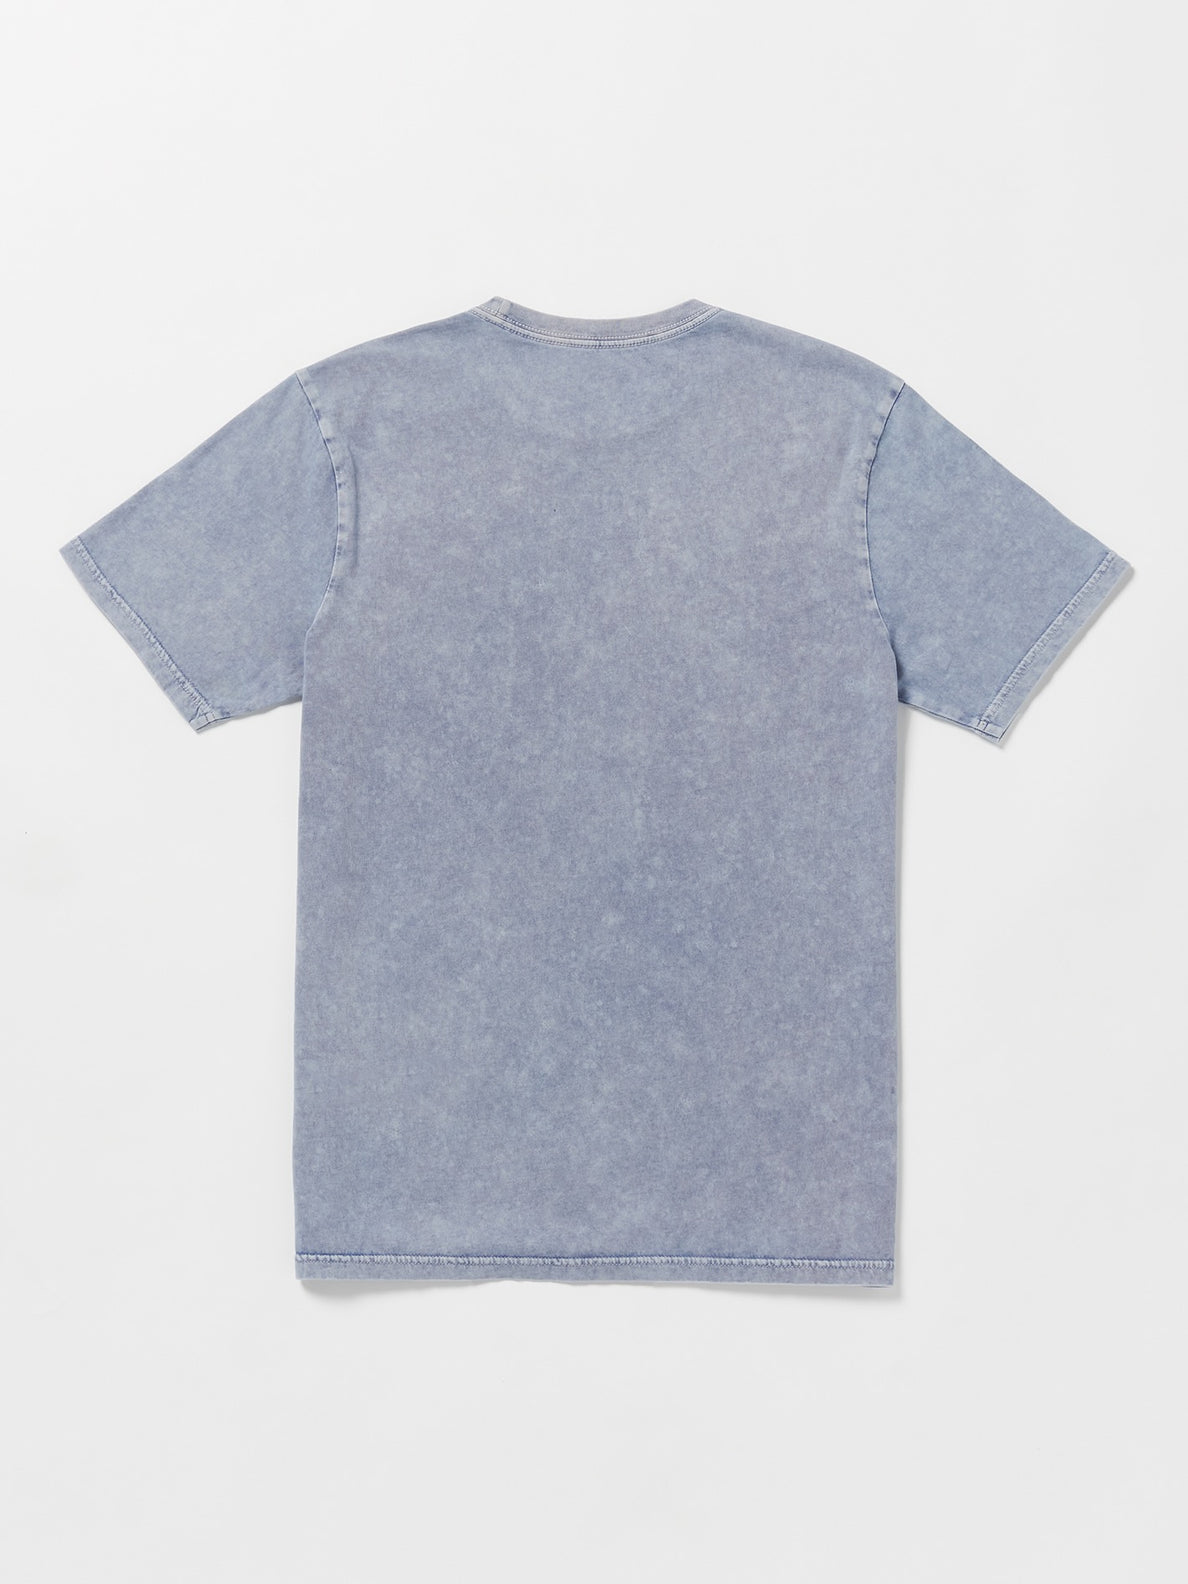 Iconic Stone Plus Short Sleeve T-Shirt - Denim